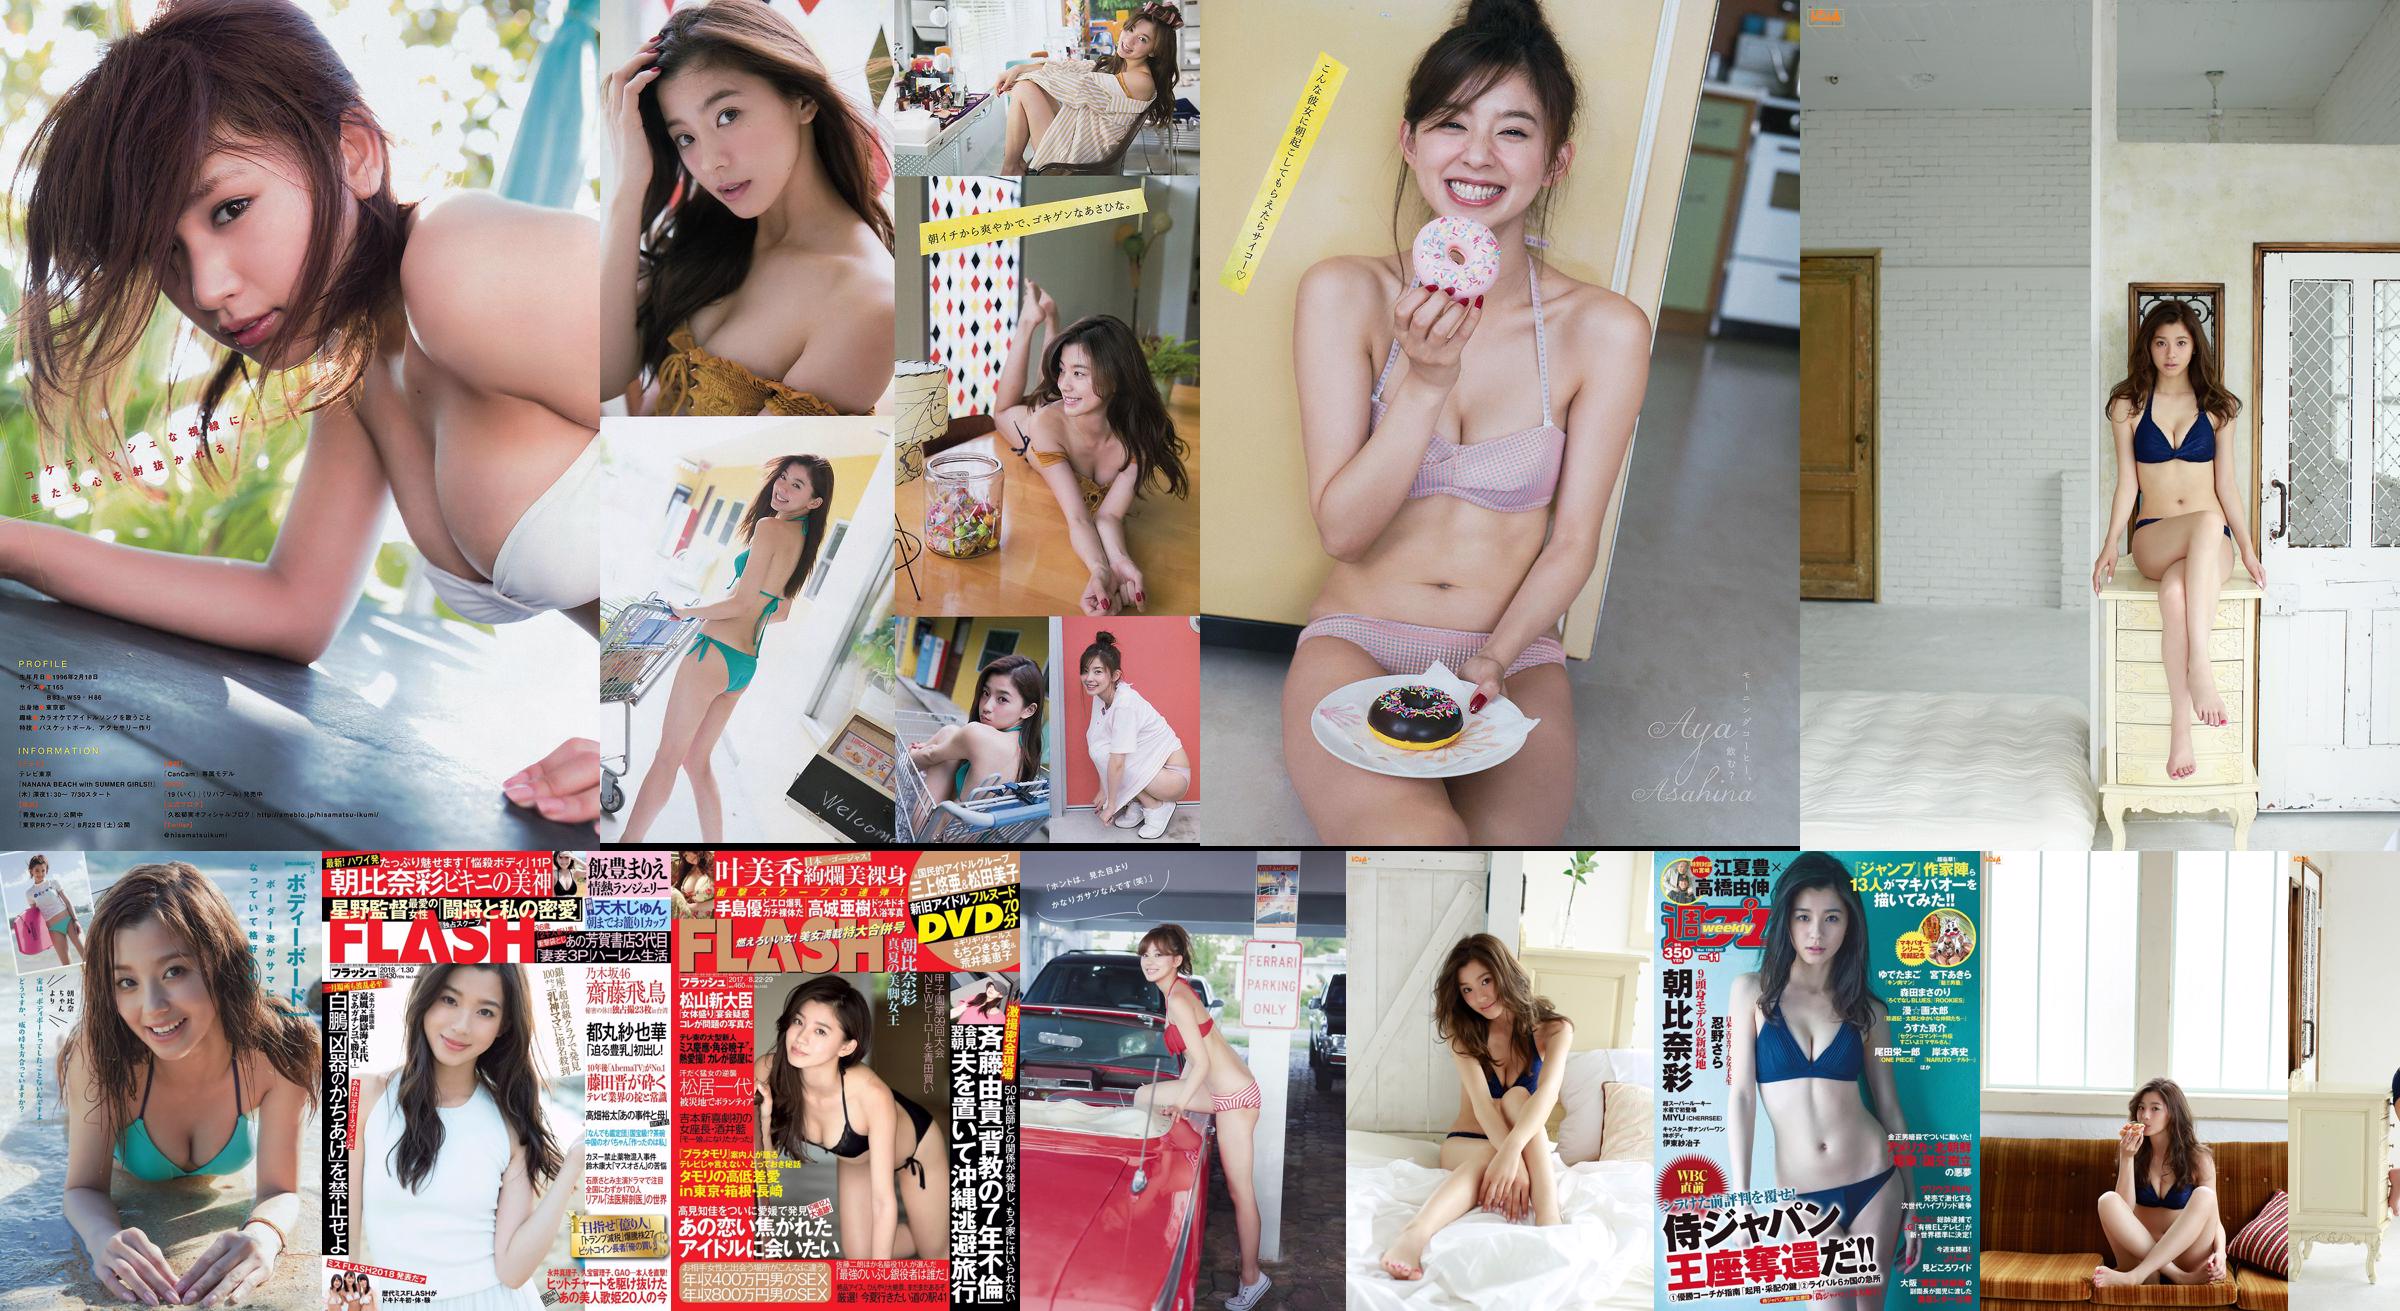 [FLASH] Aya Asahina Haruna Kawaguchi Ruri Ena Mina Asakura 2015.10.27 Photo Moshi No.138a92 Page 1